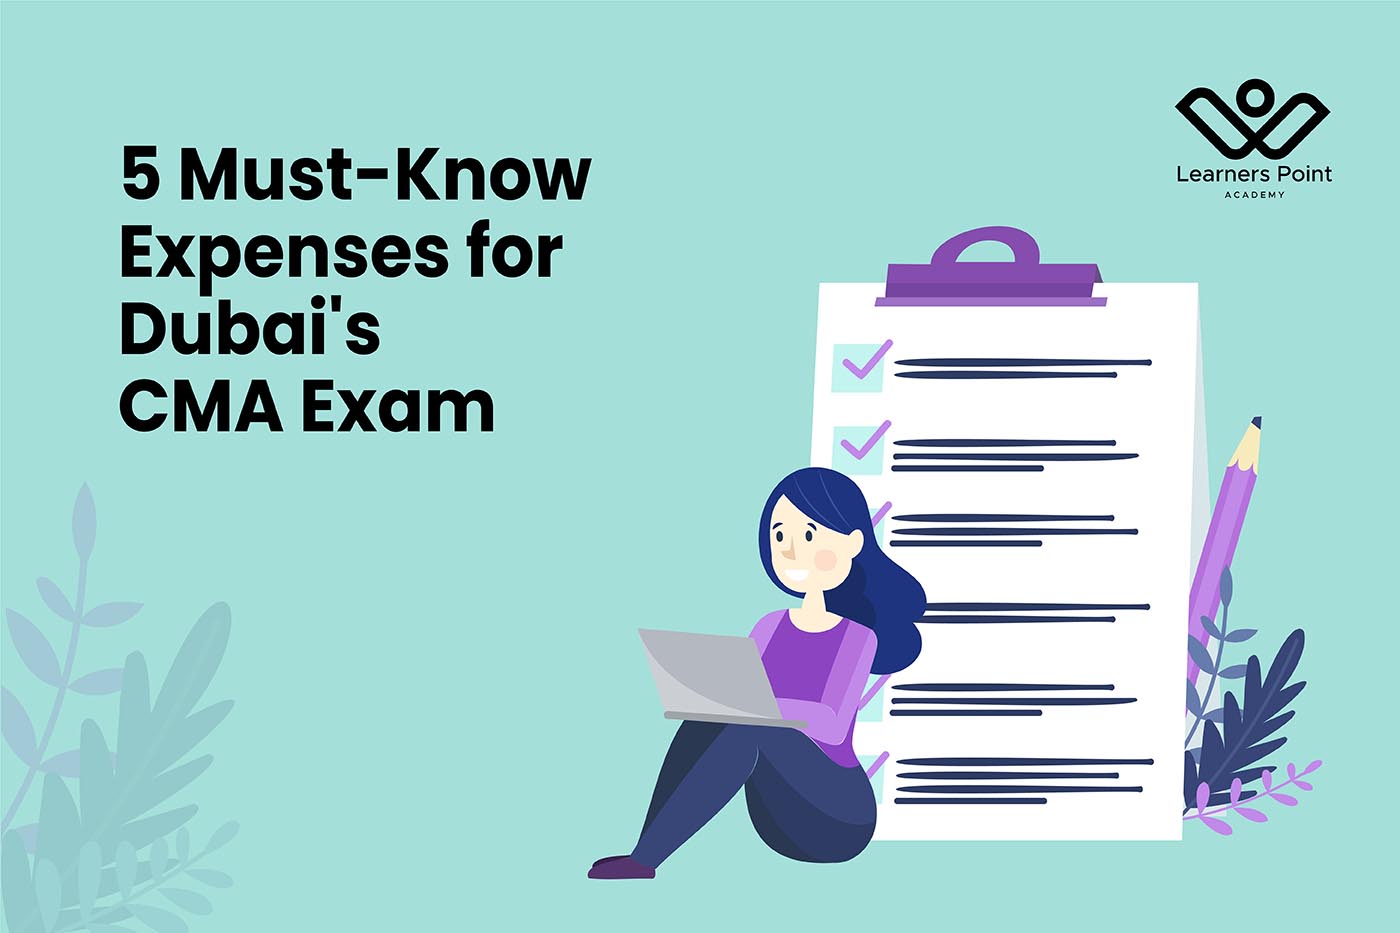 5 Must-Know Expenses for Dubai's CMA Exam